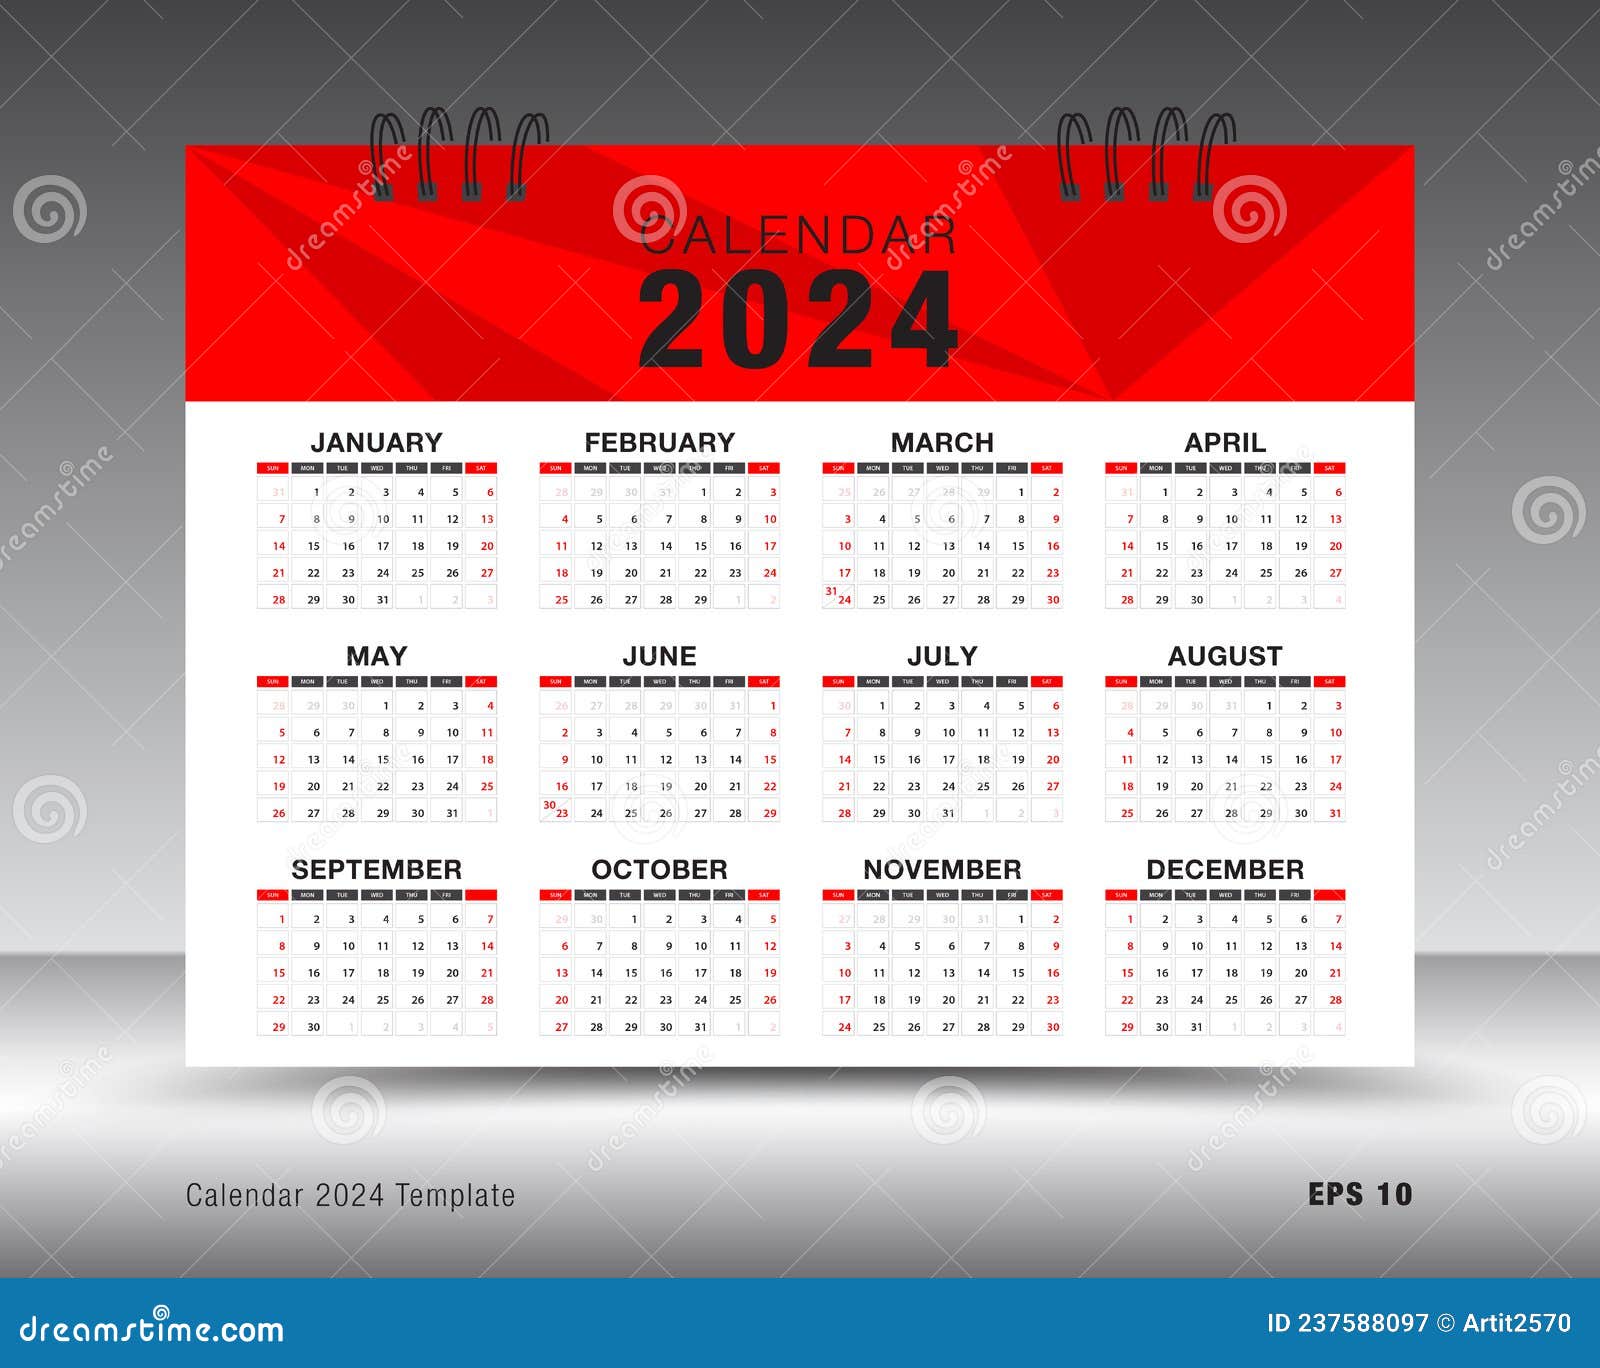 Calendrier 2024 - Calendrier Bureau 12 Mois De Janvier 2024 À